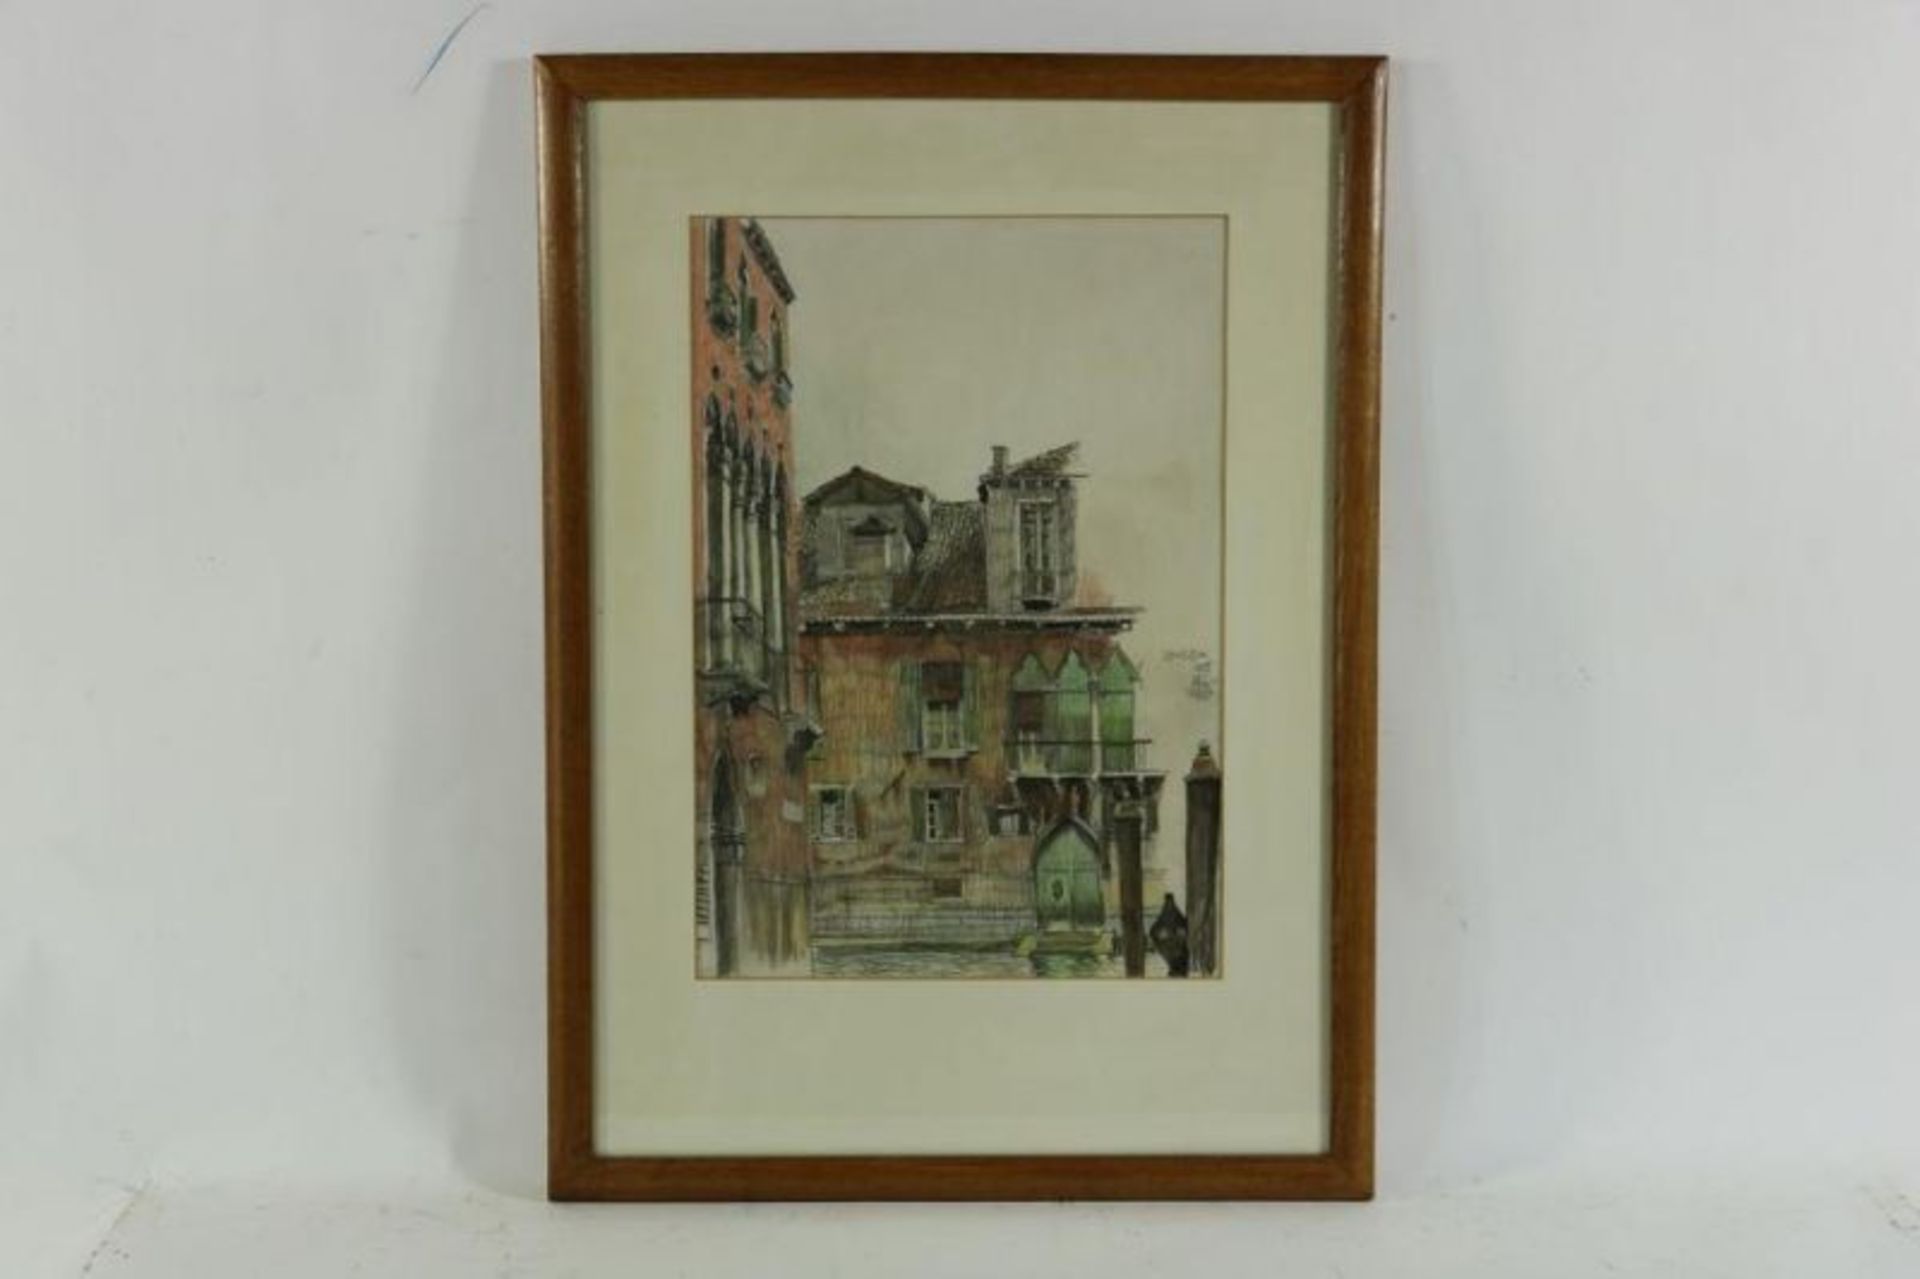 LUNS, HUIB (1881-1942), ges. r.m., Venezia, tekening (1935) 50 x 40 cm. Luns, Huib, signed, - Bild 2 aus 4